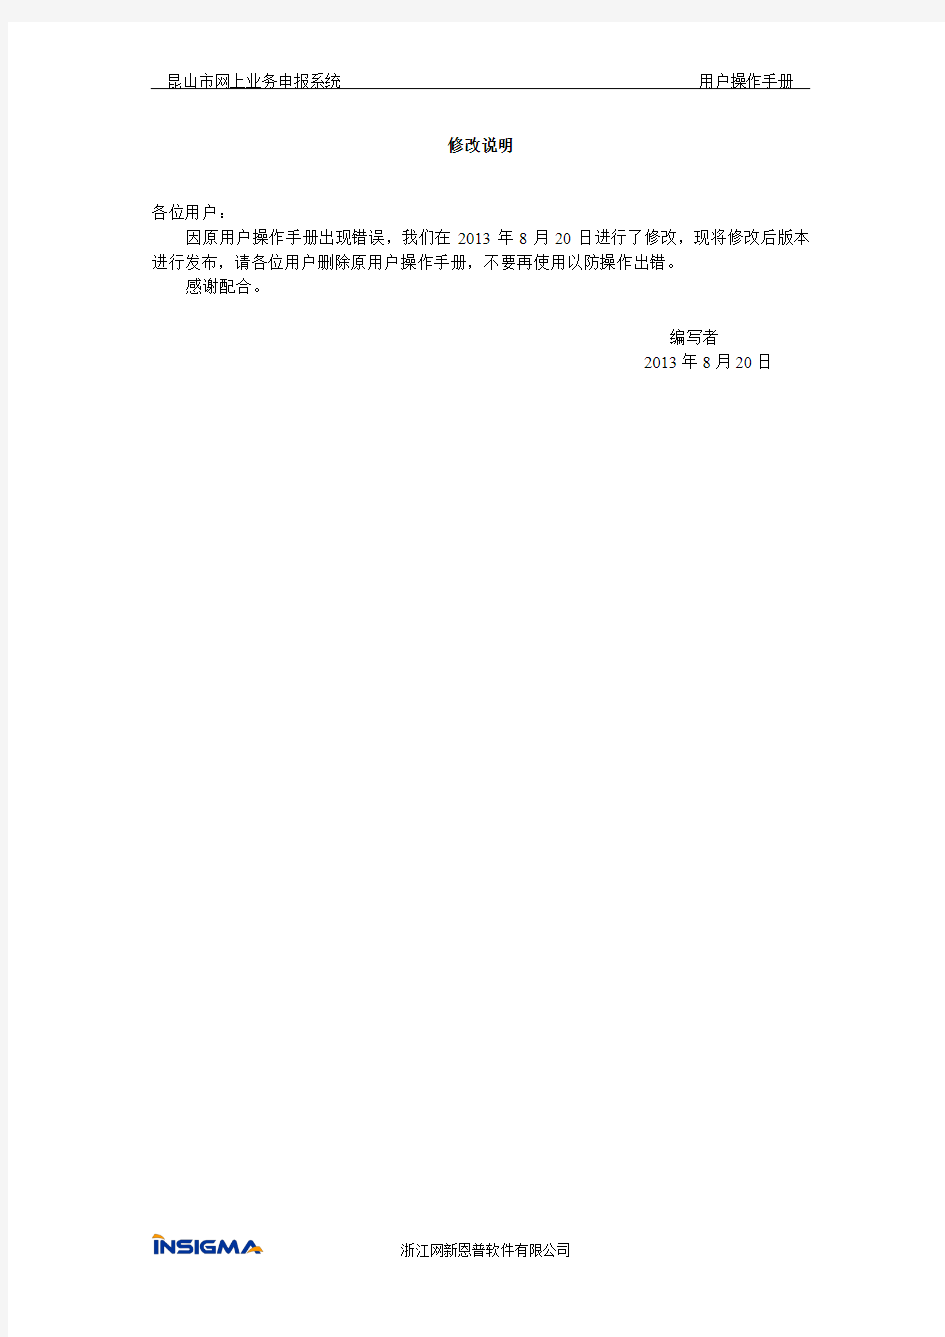 昆山市网上业务申报系统用户操作手册(2013年8月20日版)